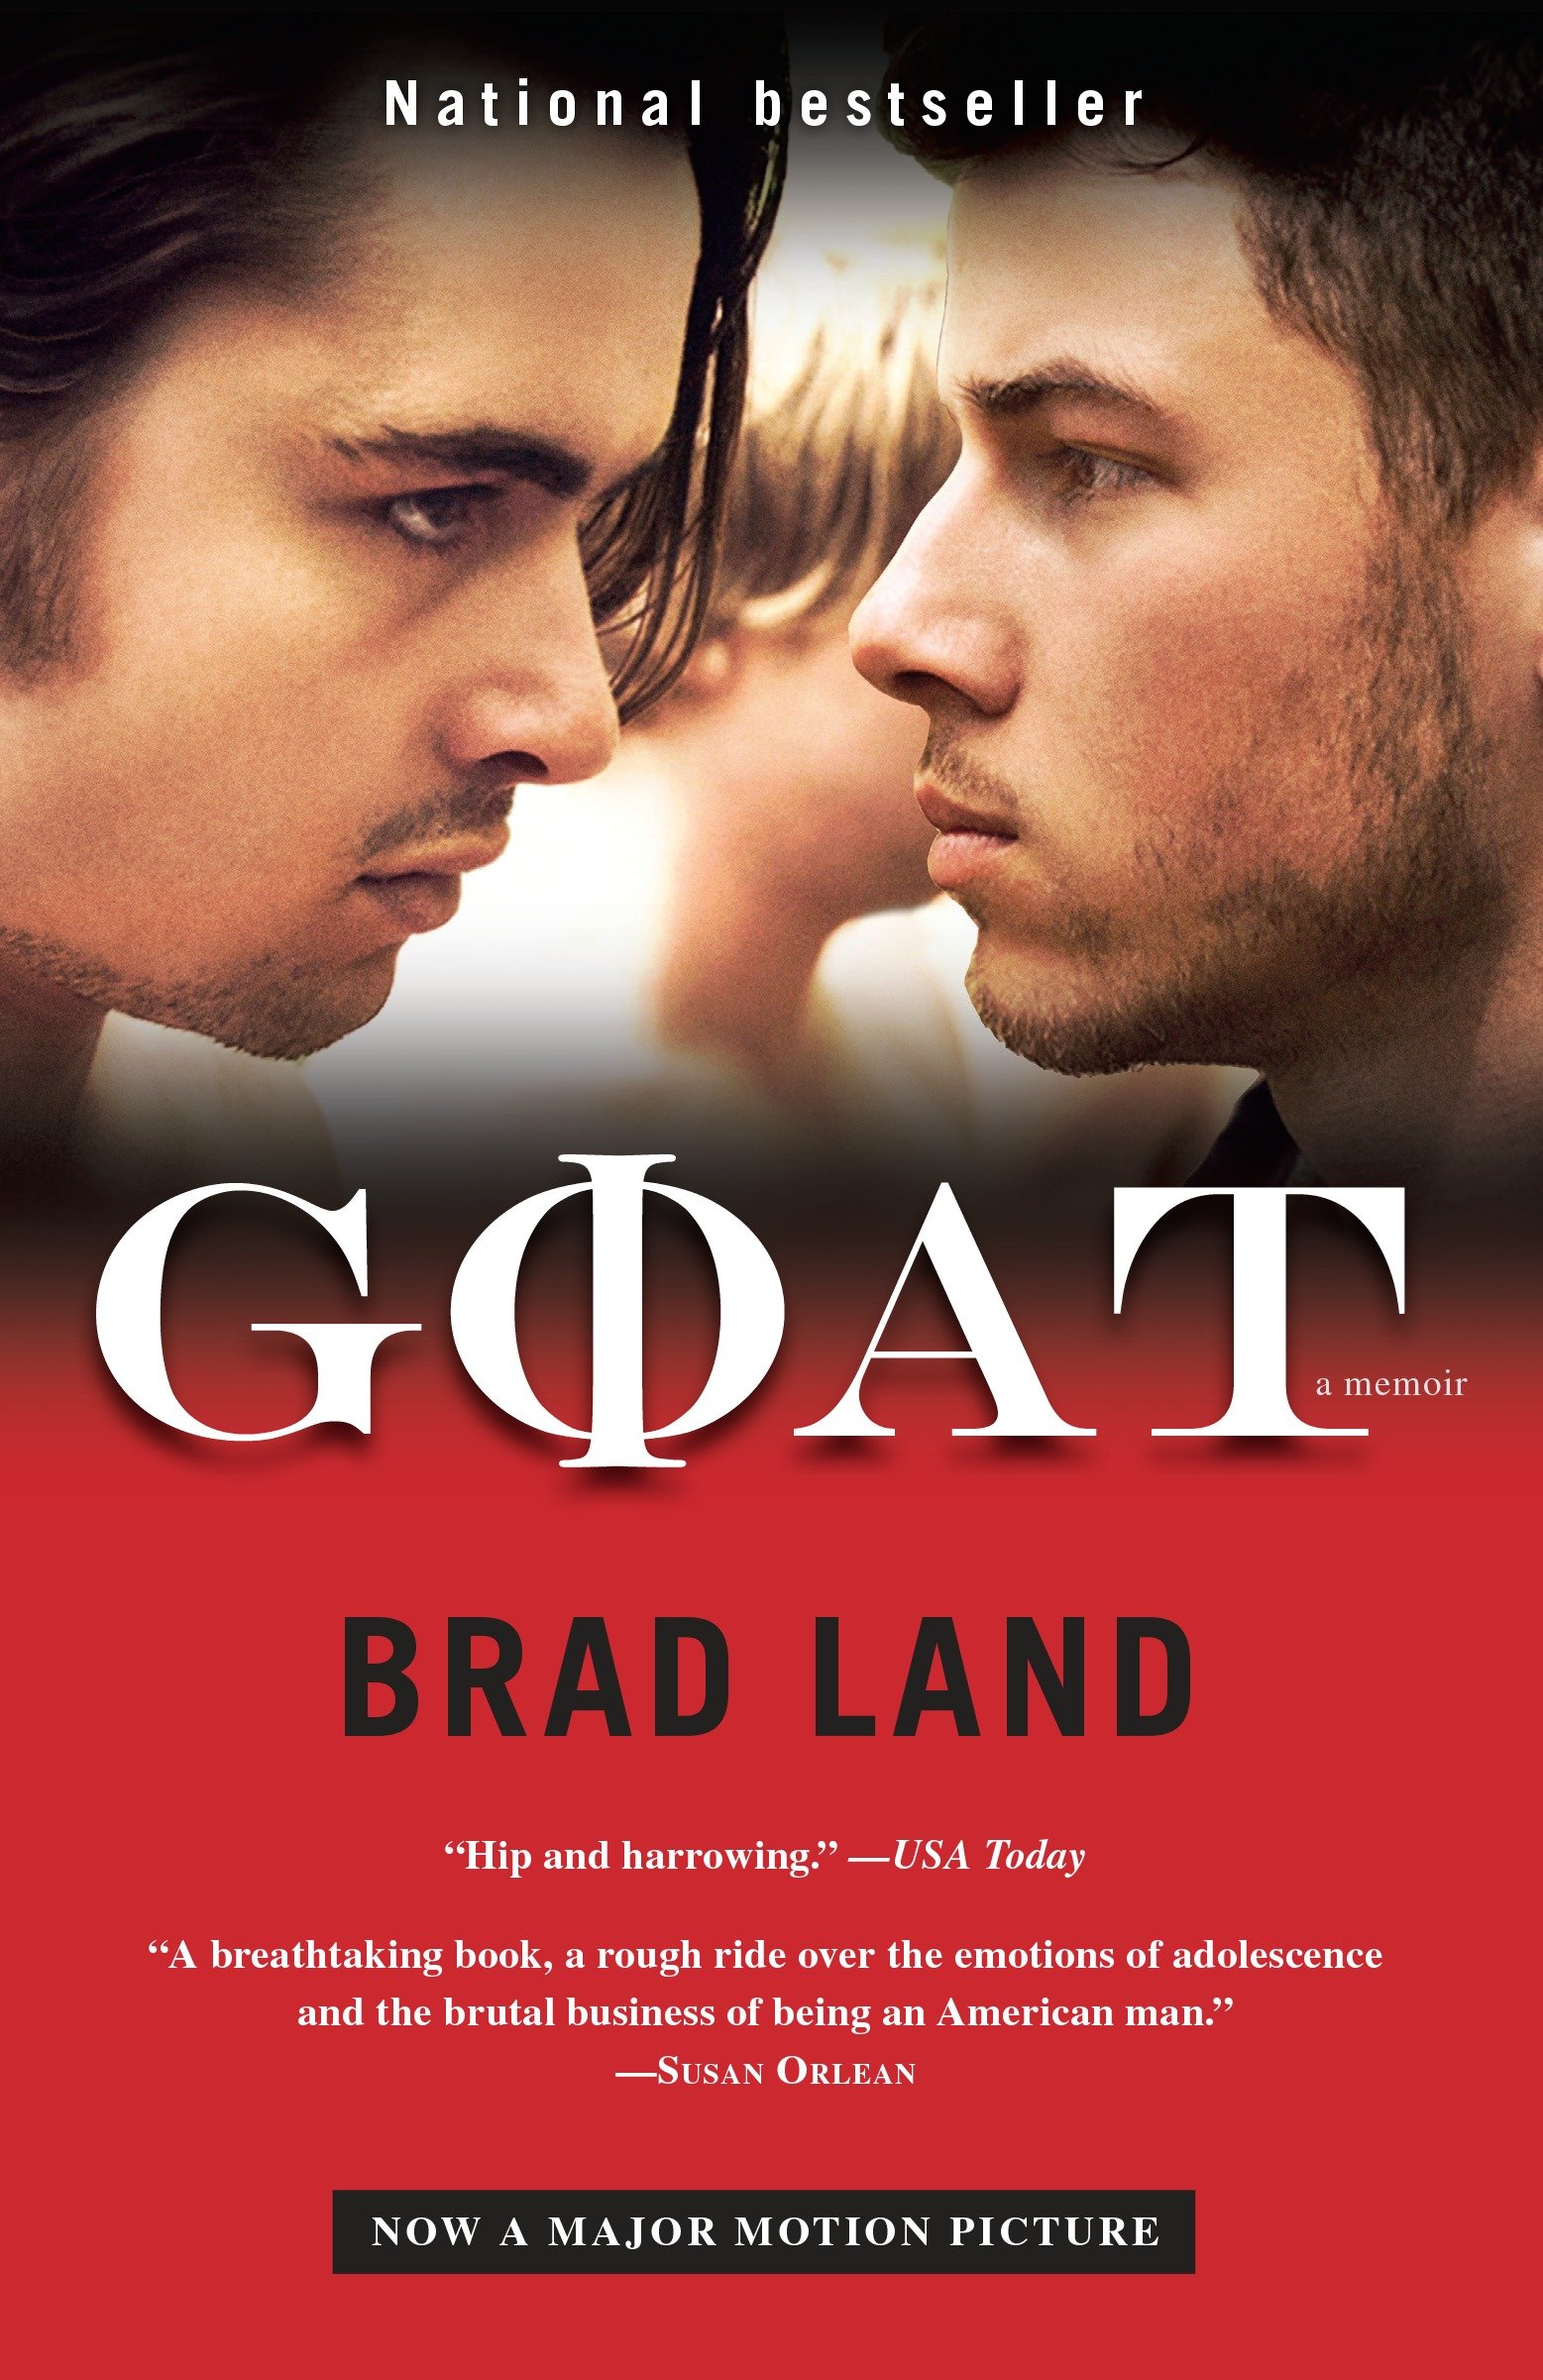 Goat a memoir cover image